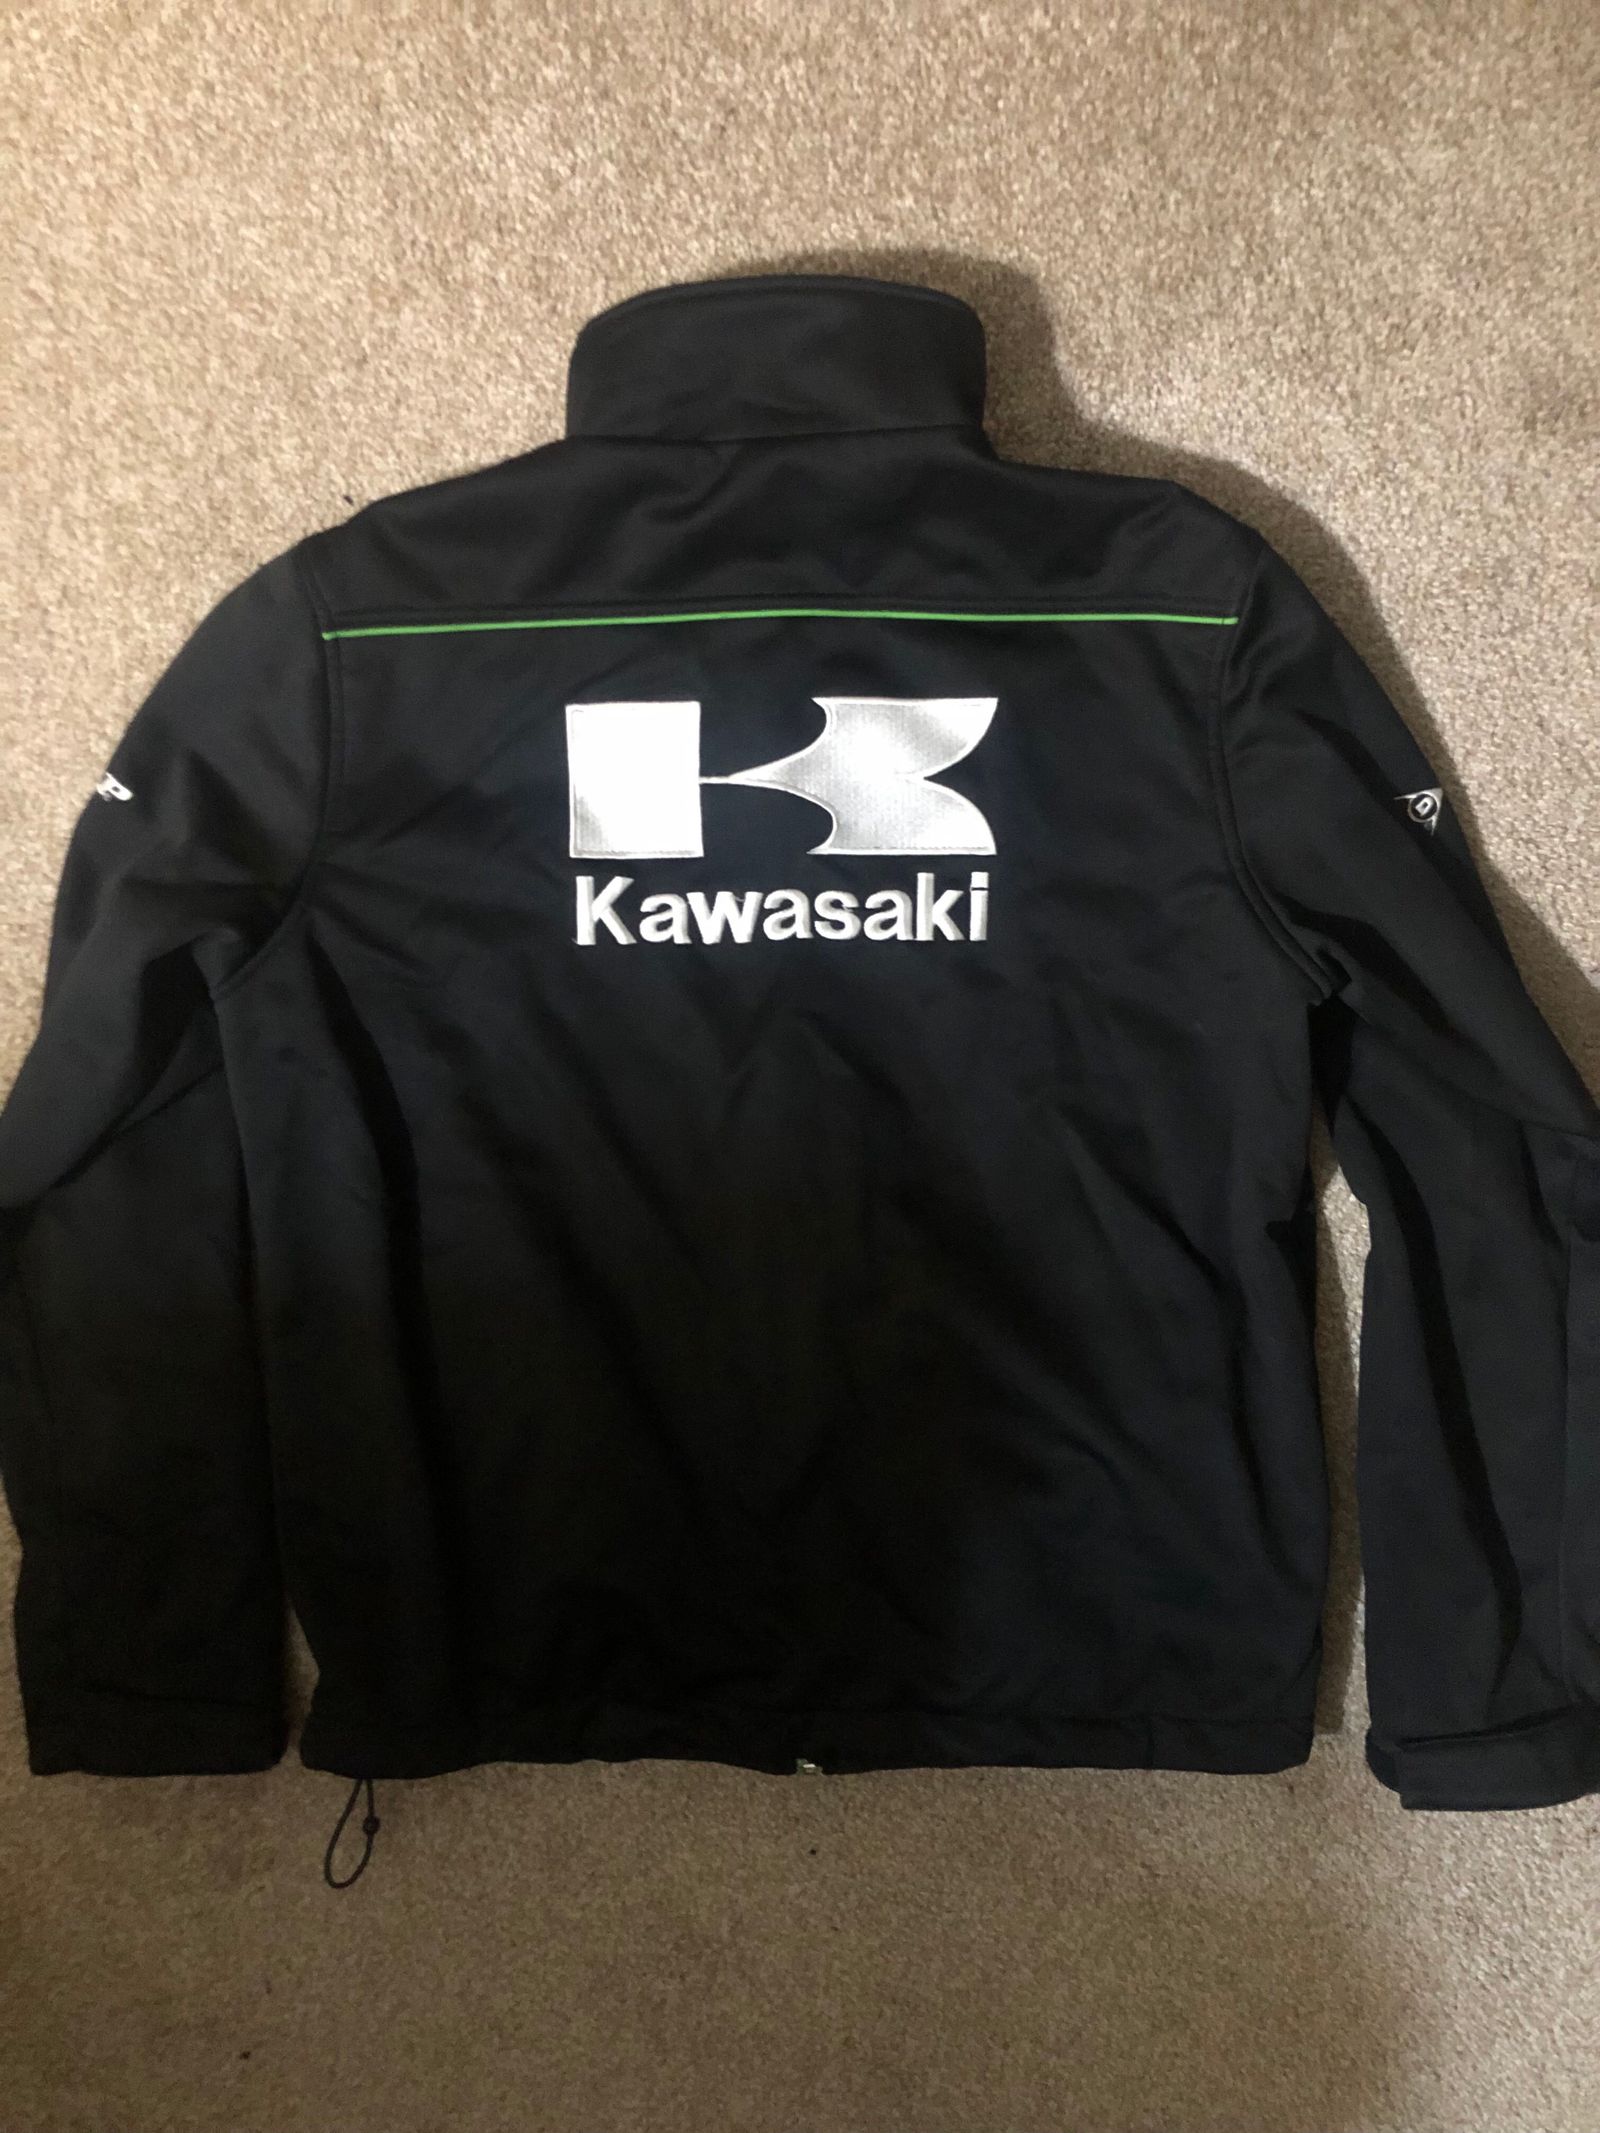 Kawasaki Apparel - Size S | MX Locker